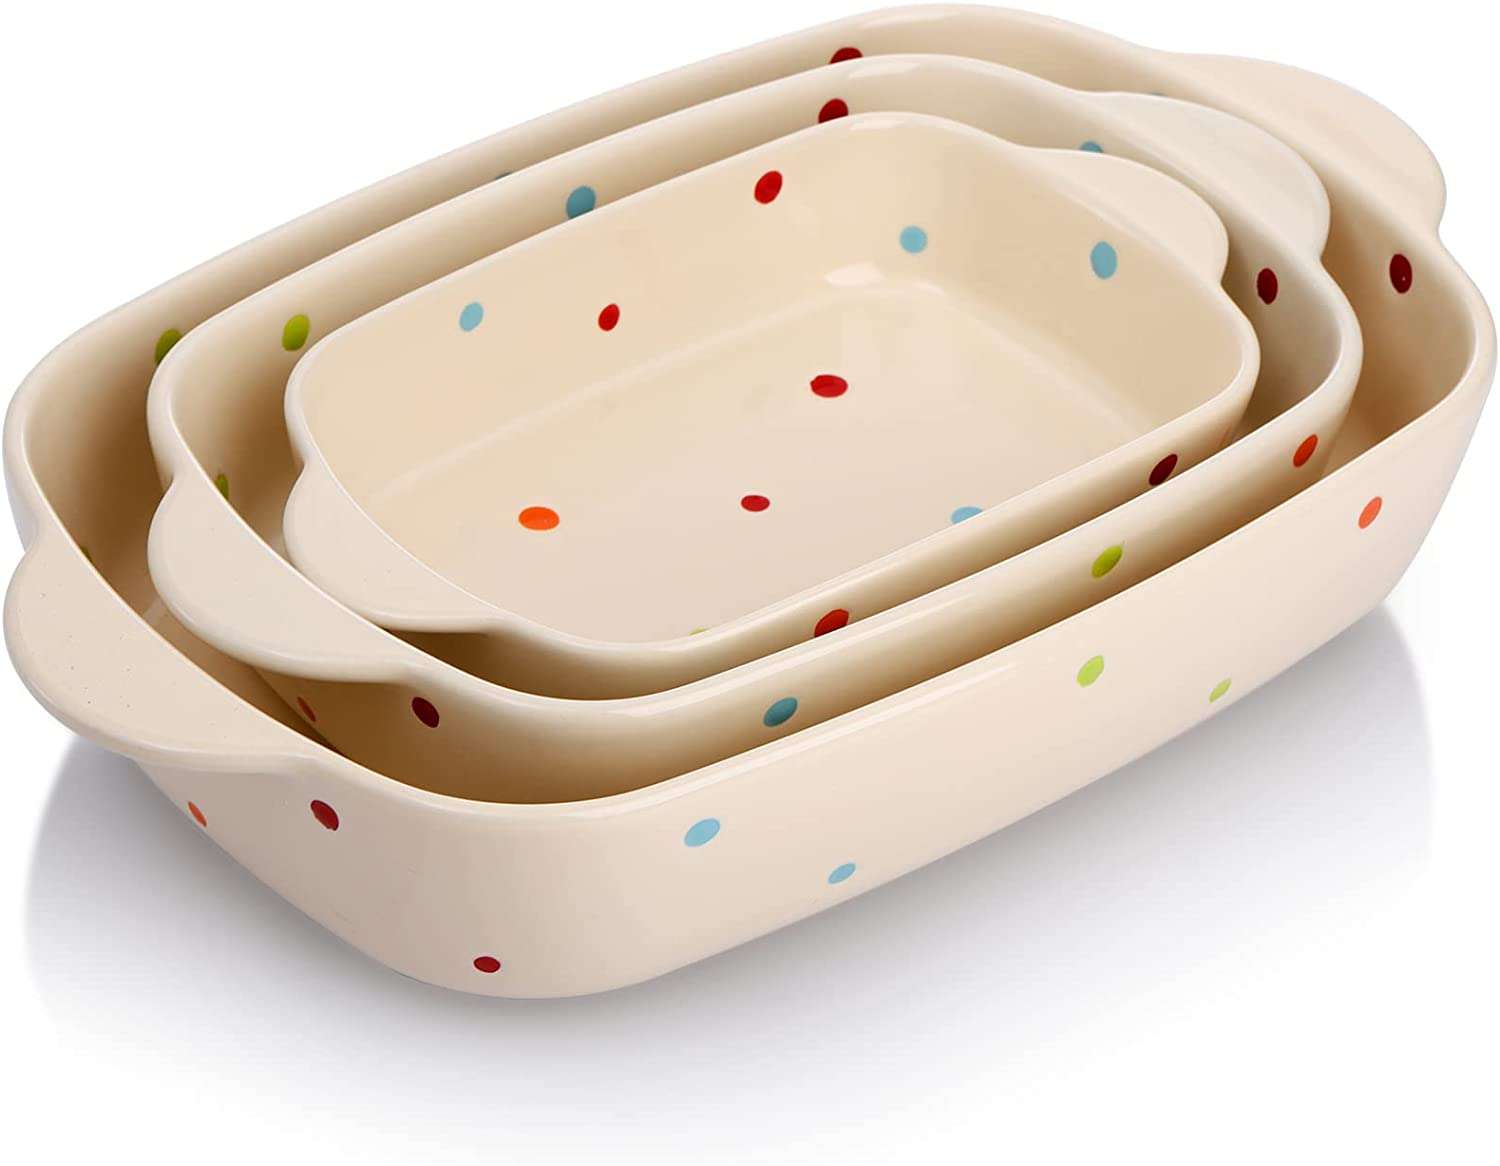 4. AVLA Porcelain Baking Dish Set